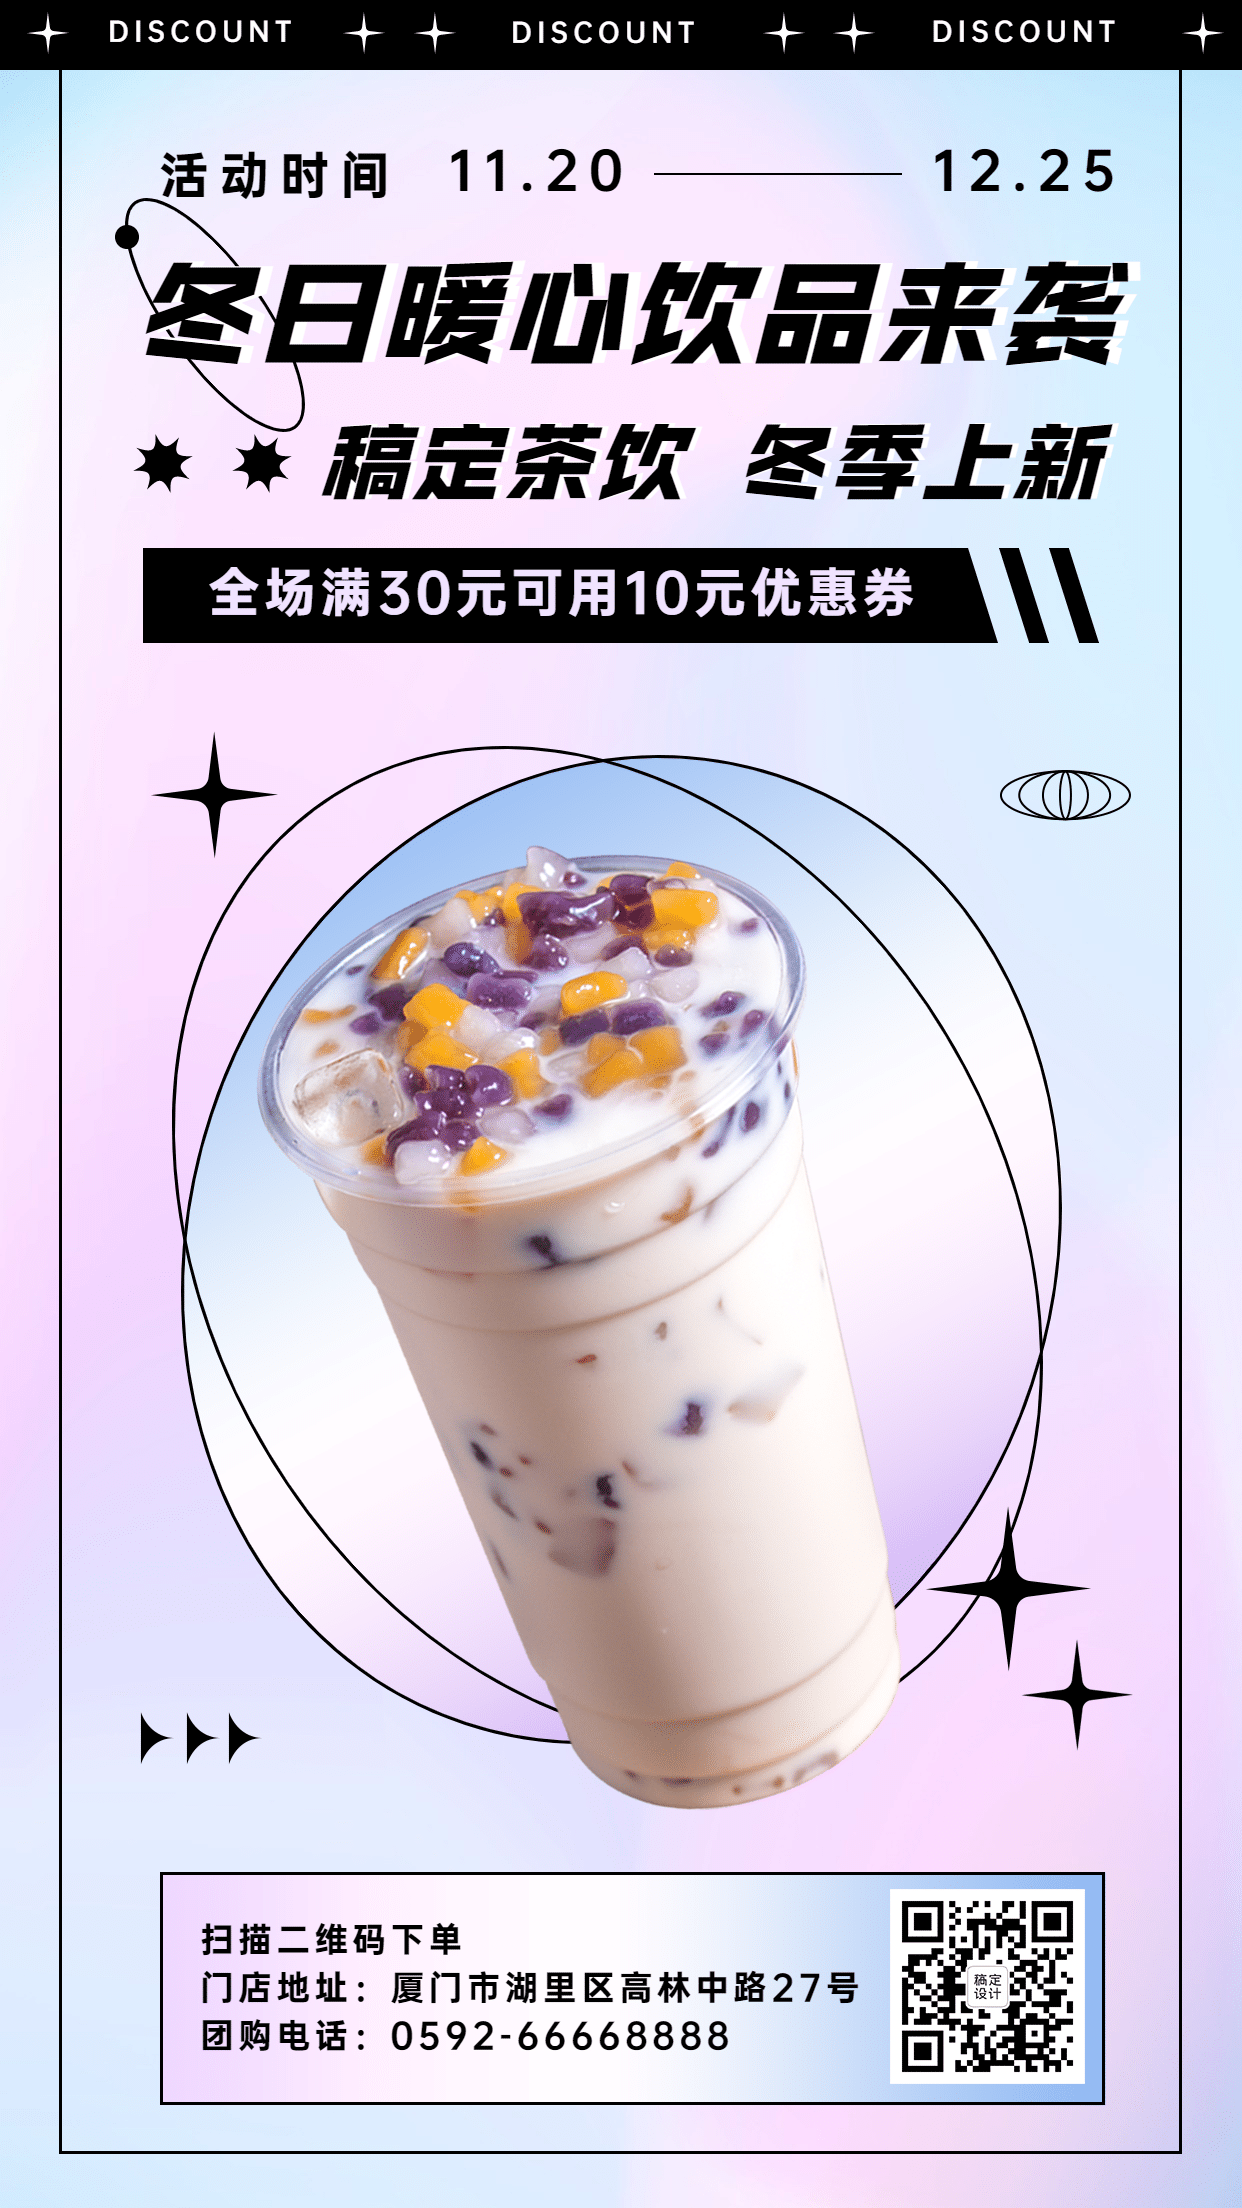 奶茶饮品新品上市文艺感手机海报预览效果